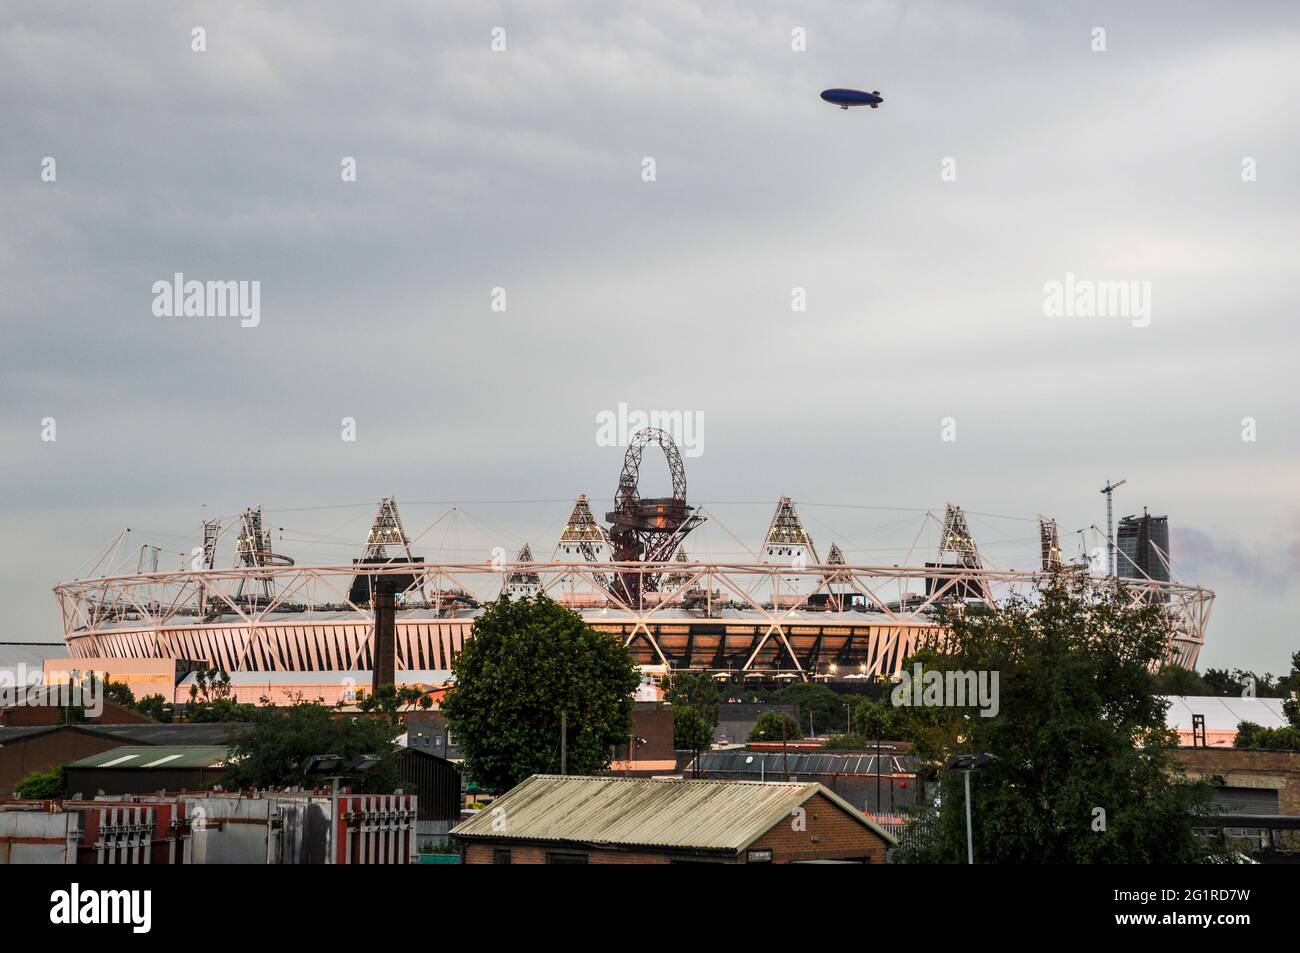 Goodyear Blimp filmant à la télévision au-dessus du stade olympique pour la cérémonie d'ouverture des Jeux Olympiques de Londres 2012. Jeux d'été nouveau stade Banque D'Images